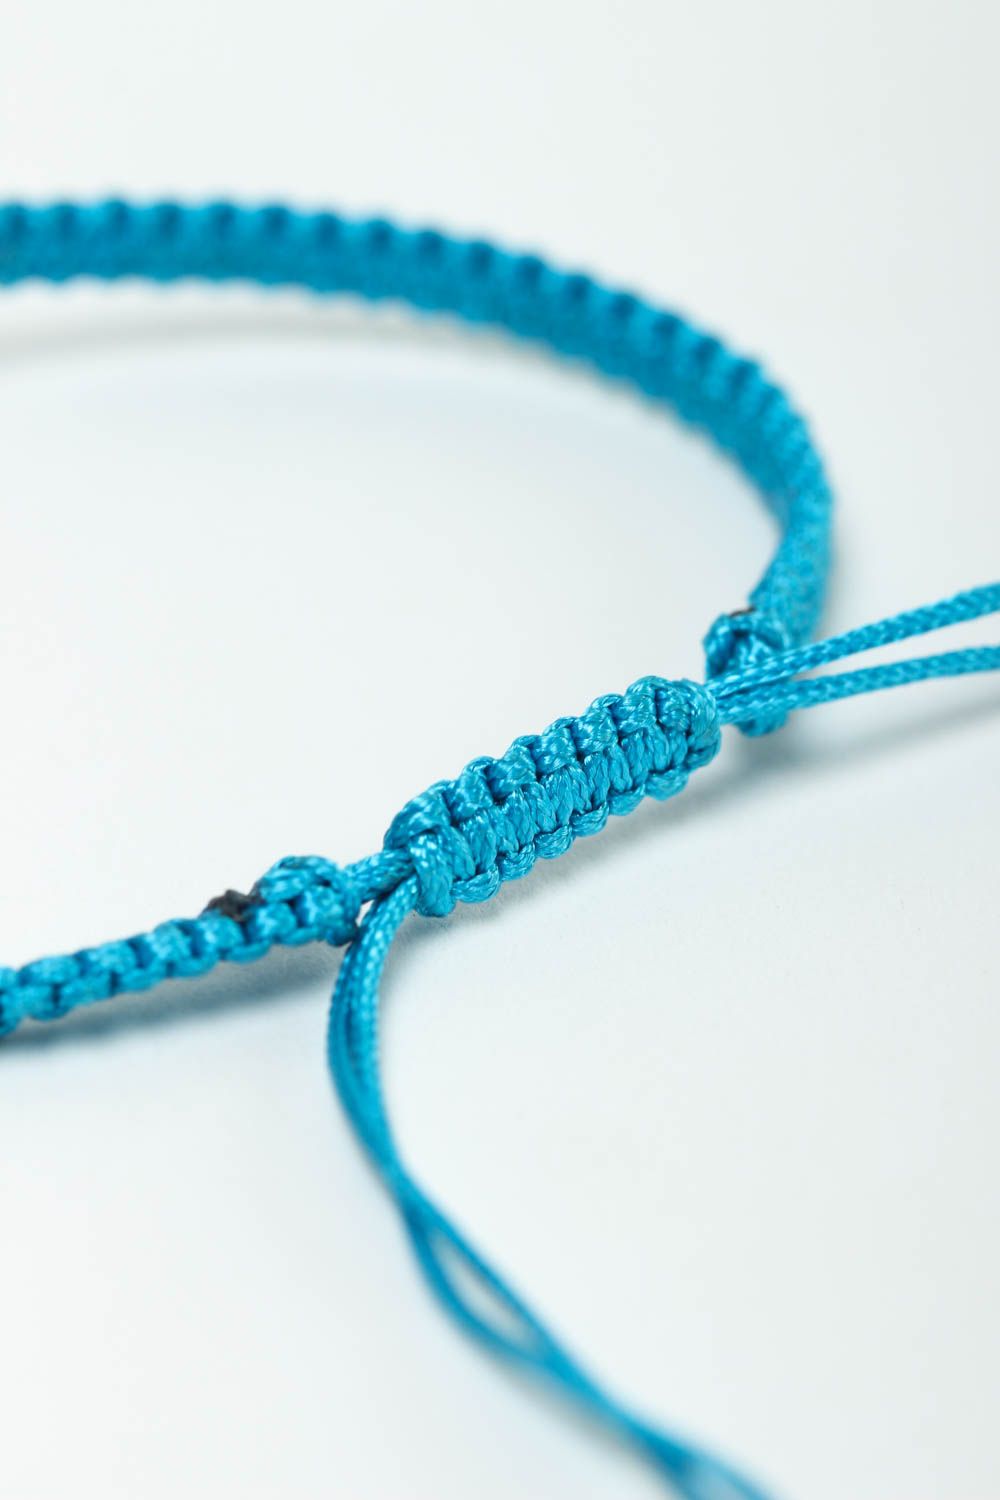 Pin by 김영미 on 비즈 팔찌 | Friendship bracelet patterns, Bracelet patterns, Friendship  bracelet patterns easy